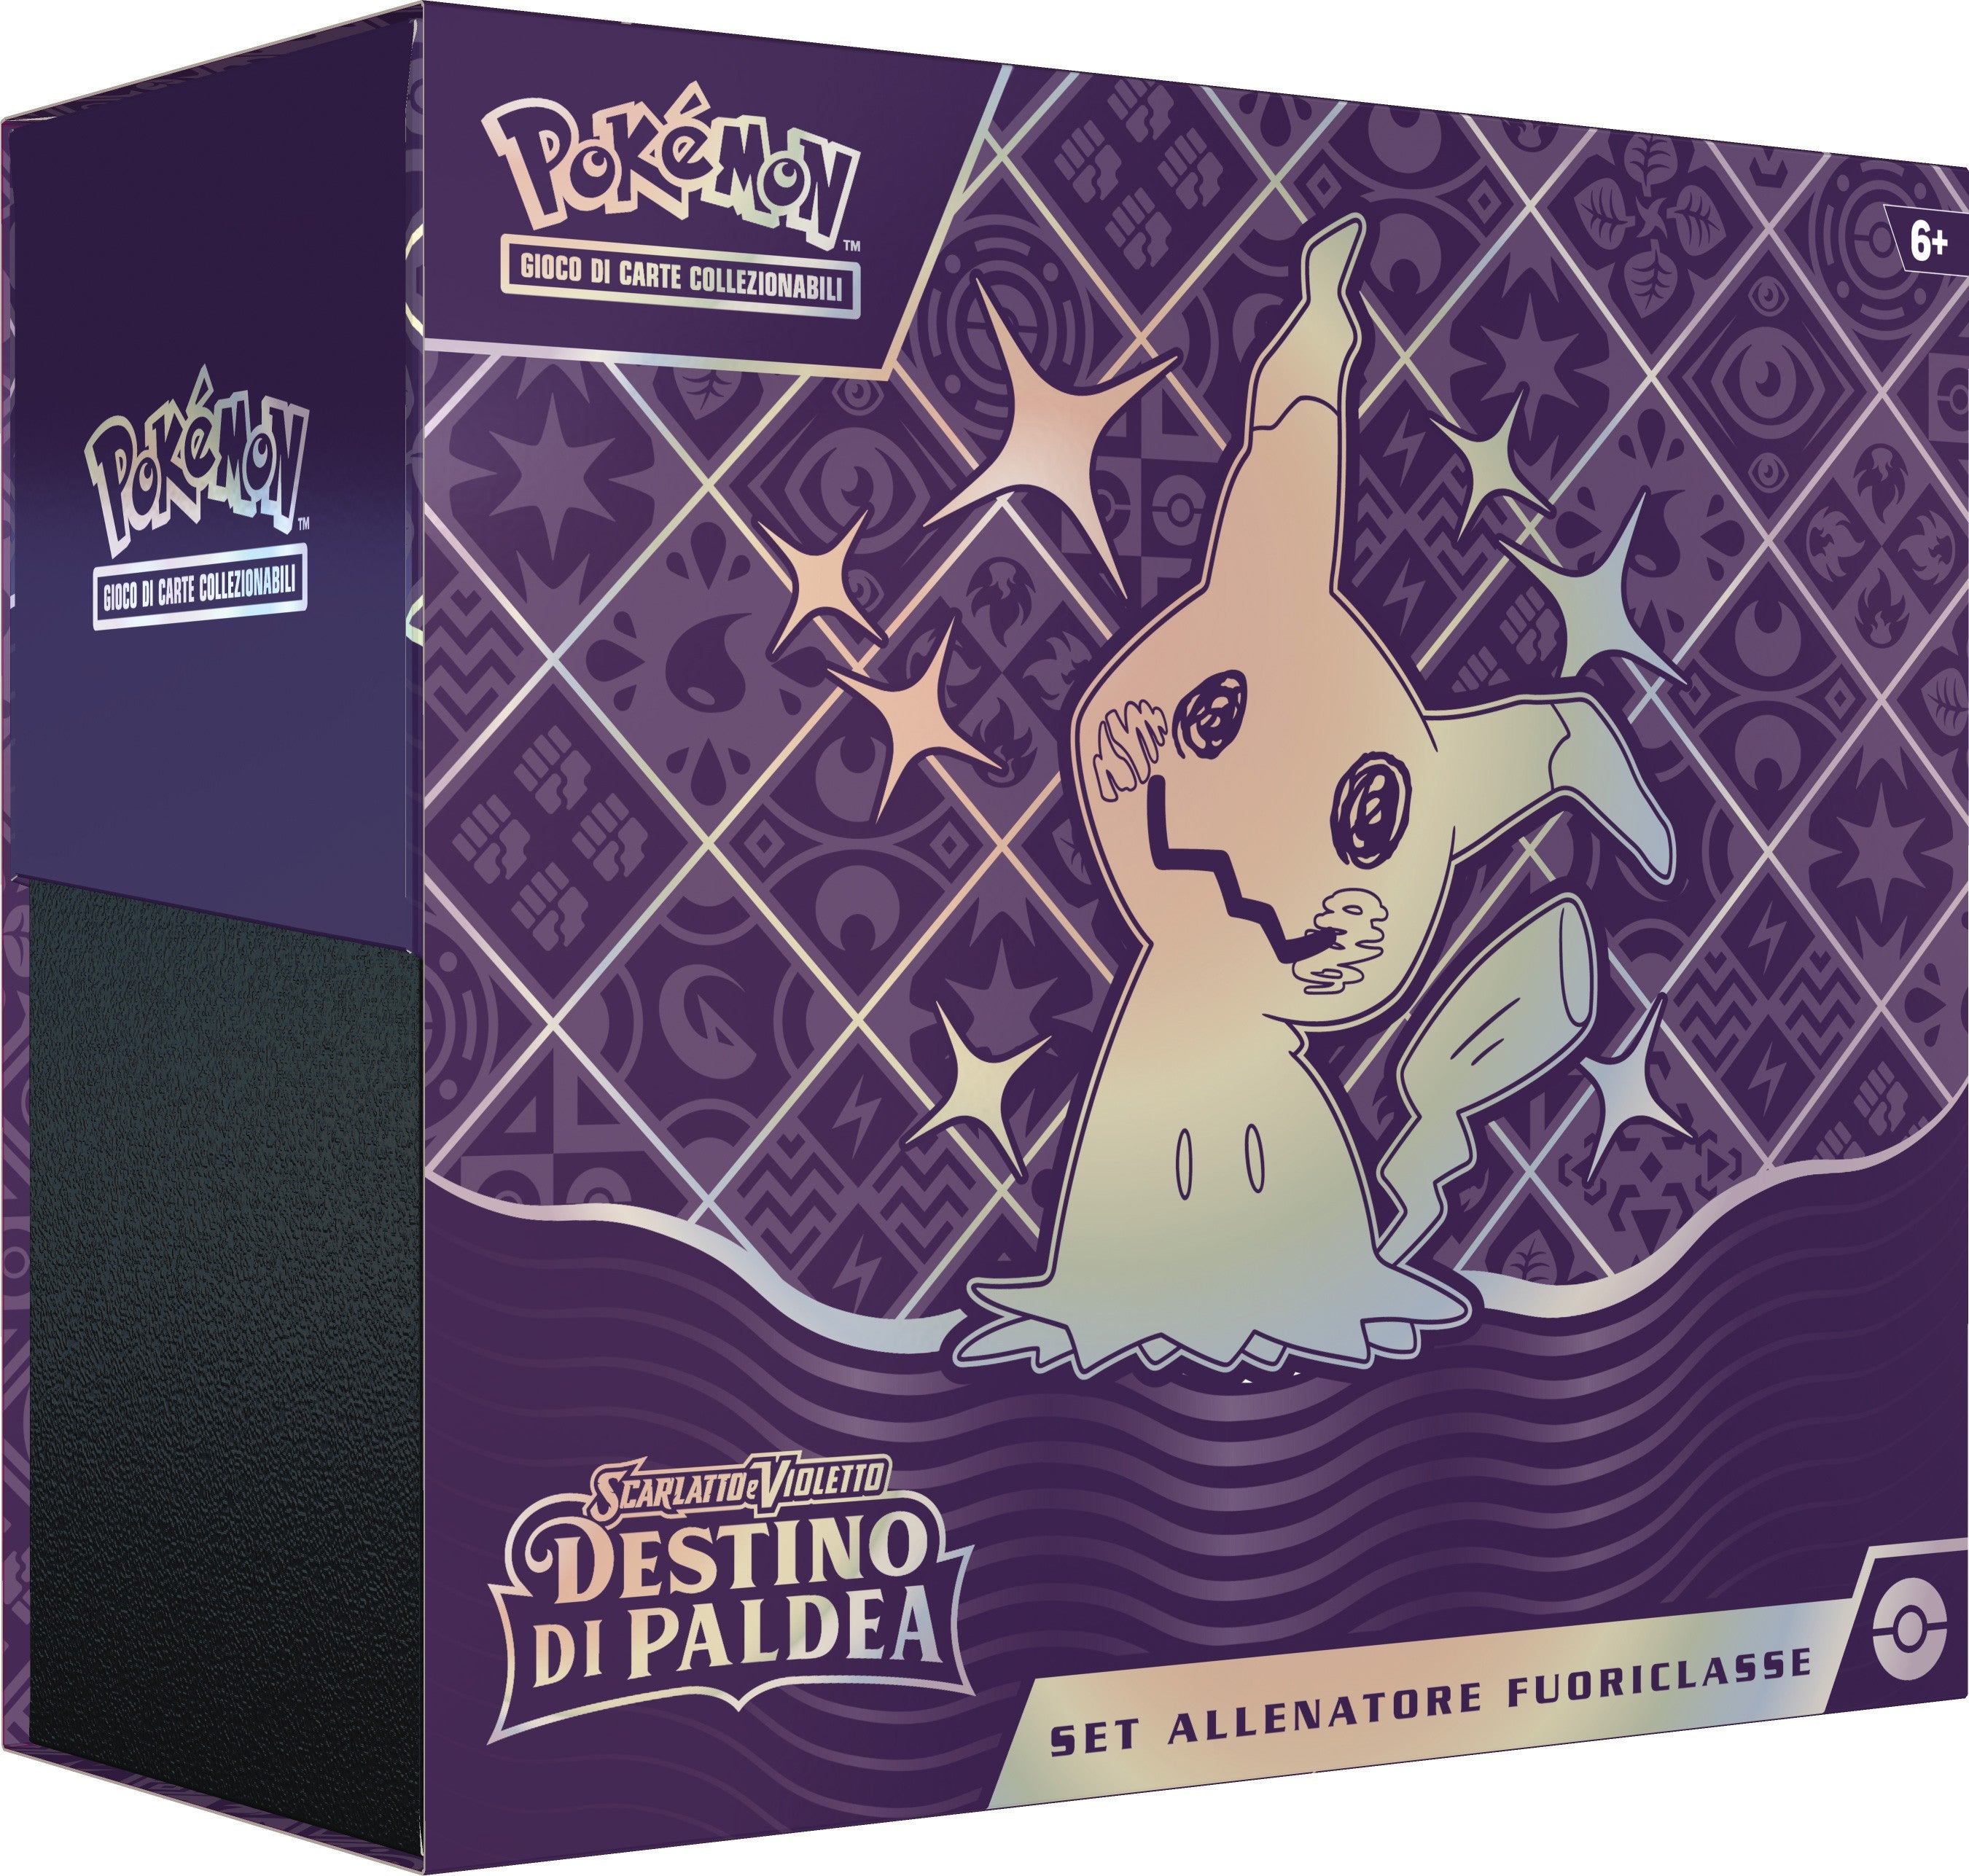 Pokémon Scarlatto & Violetto Set Allenatore Fuoriclasse Destino di Paldea (IT)